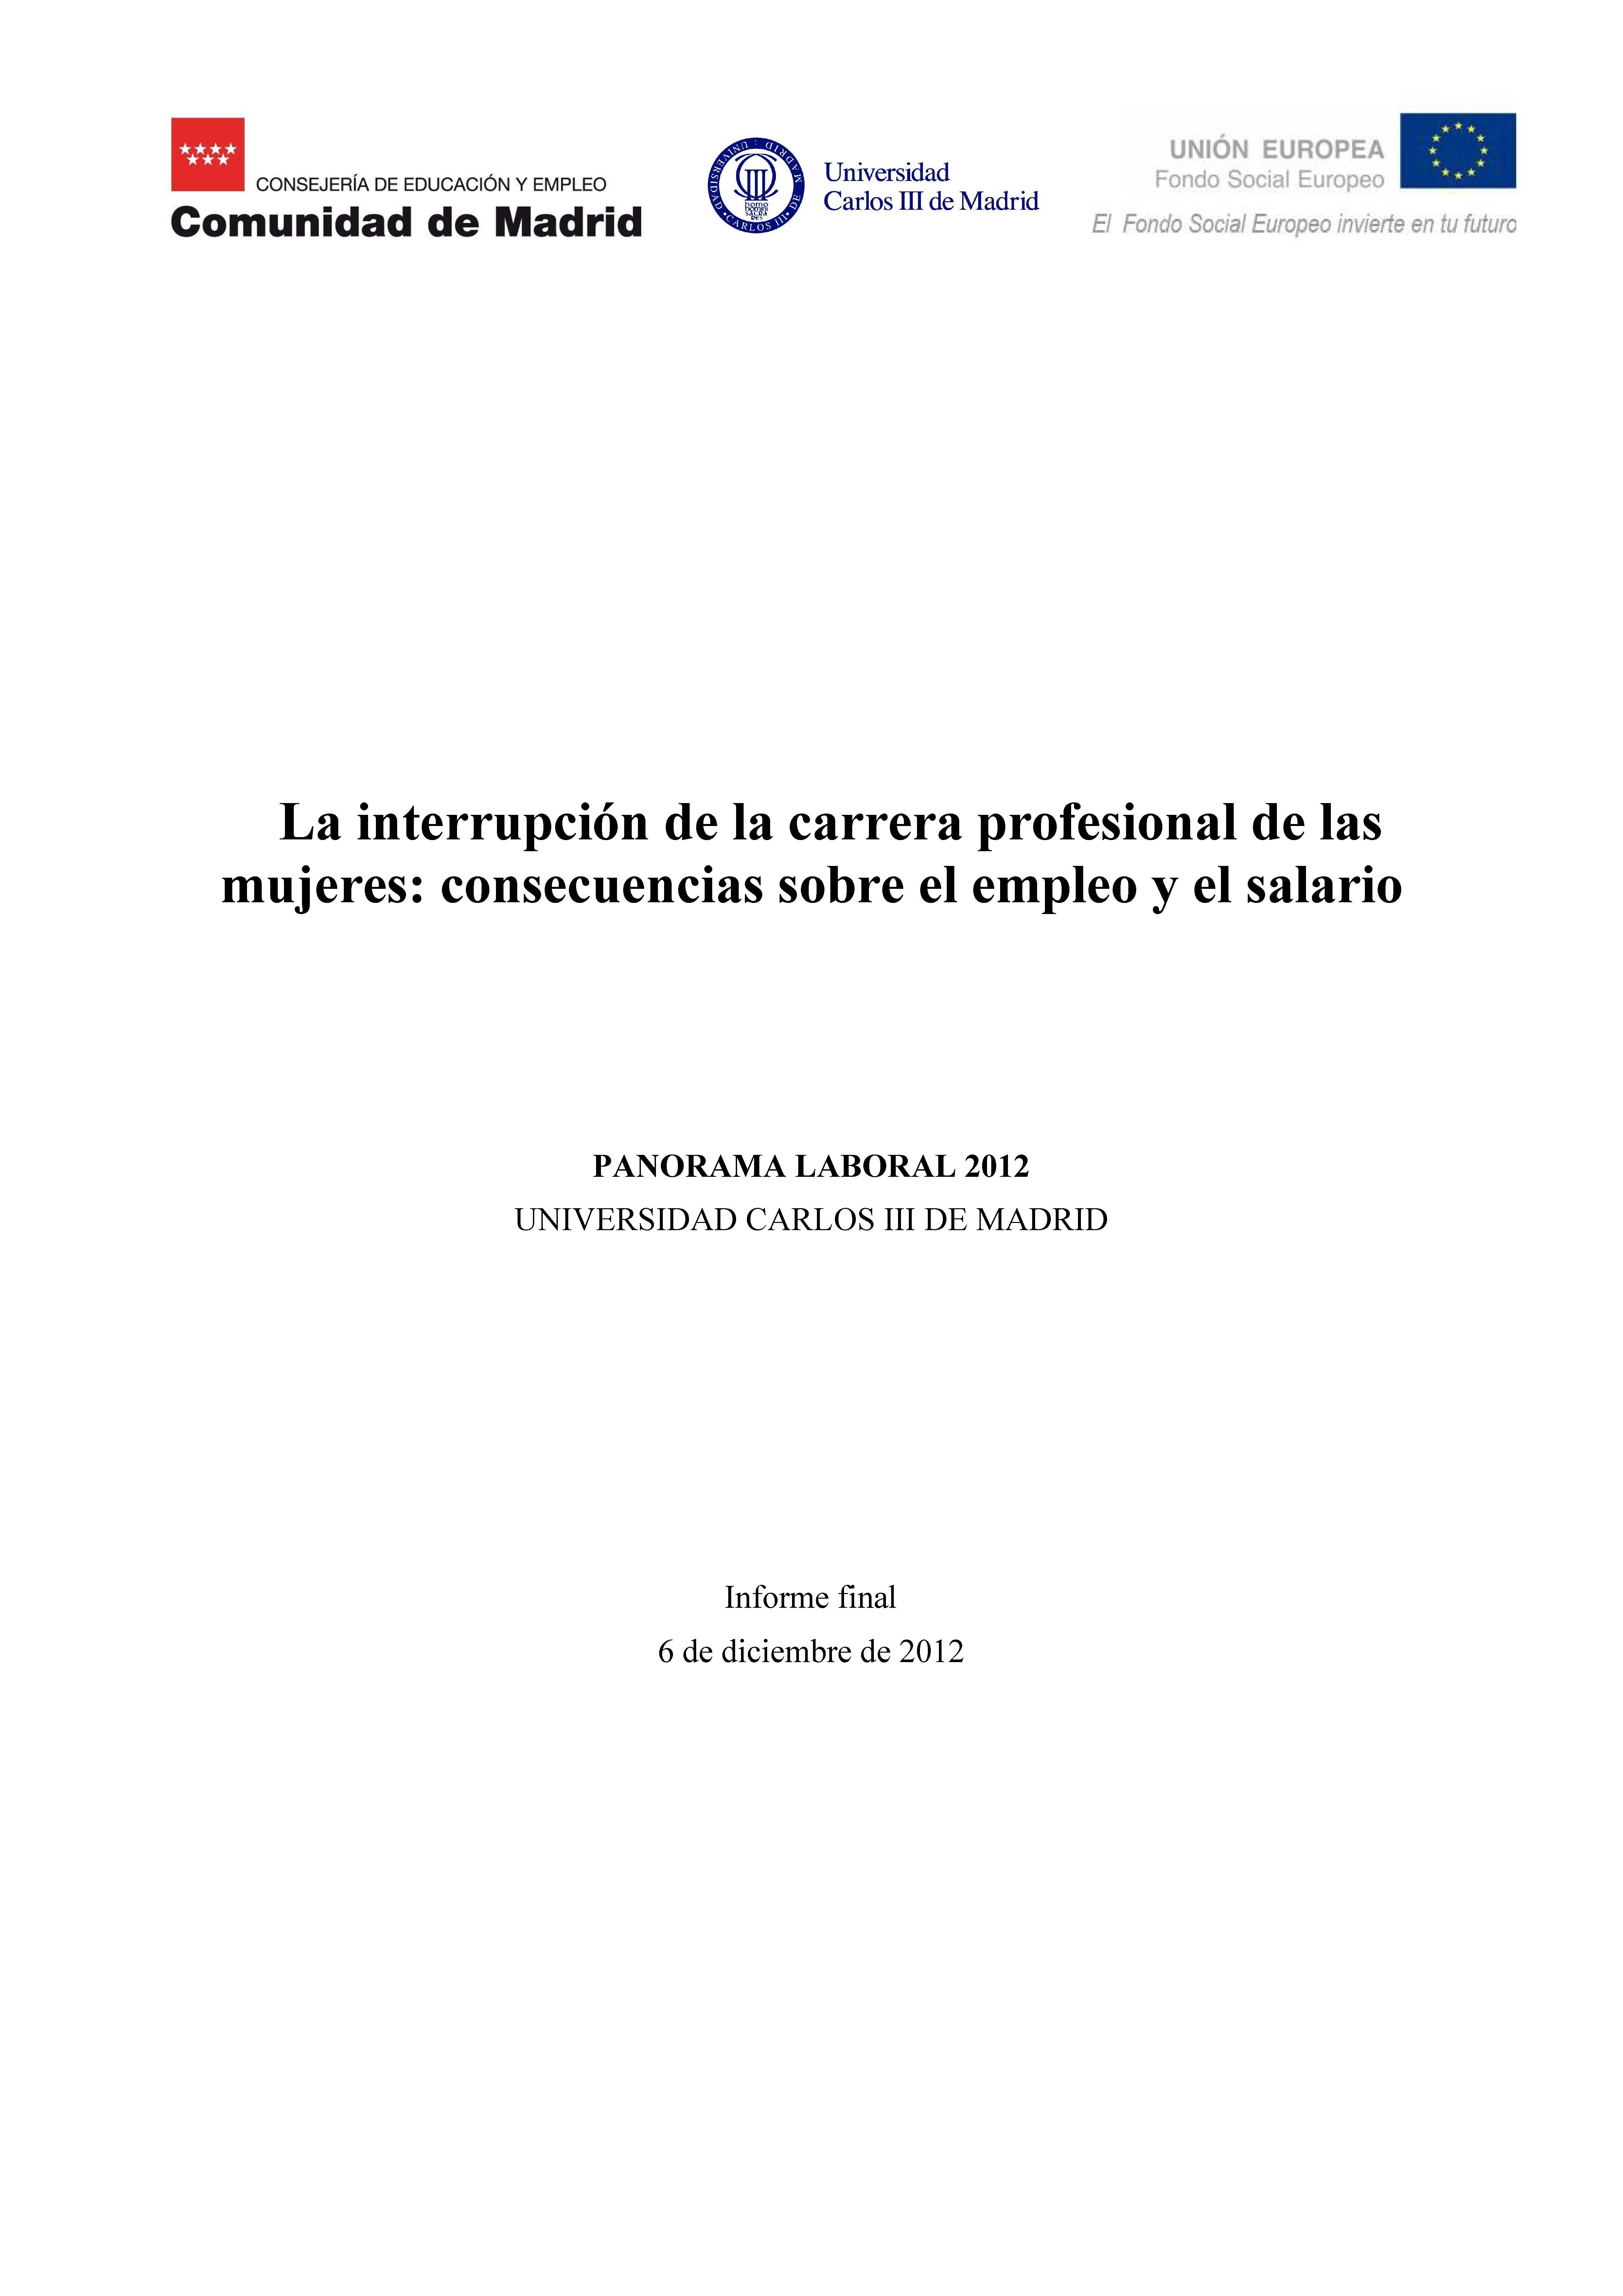 Portada de Panorama Laboral 2012. La interrupción de la carrera profesional de las mujeres consecuencias sobre el empleo y el salario.